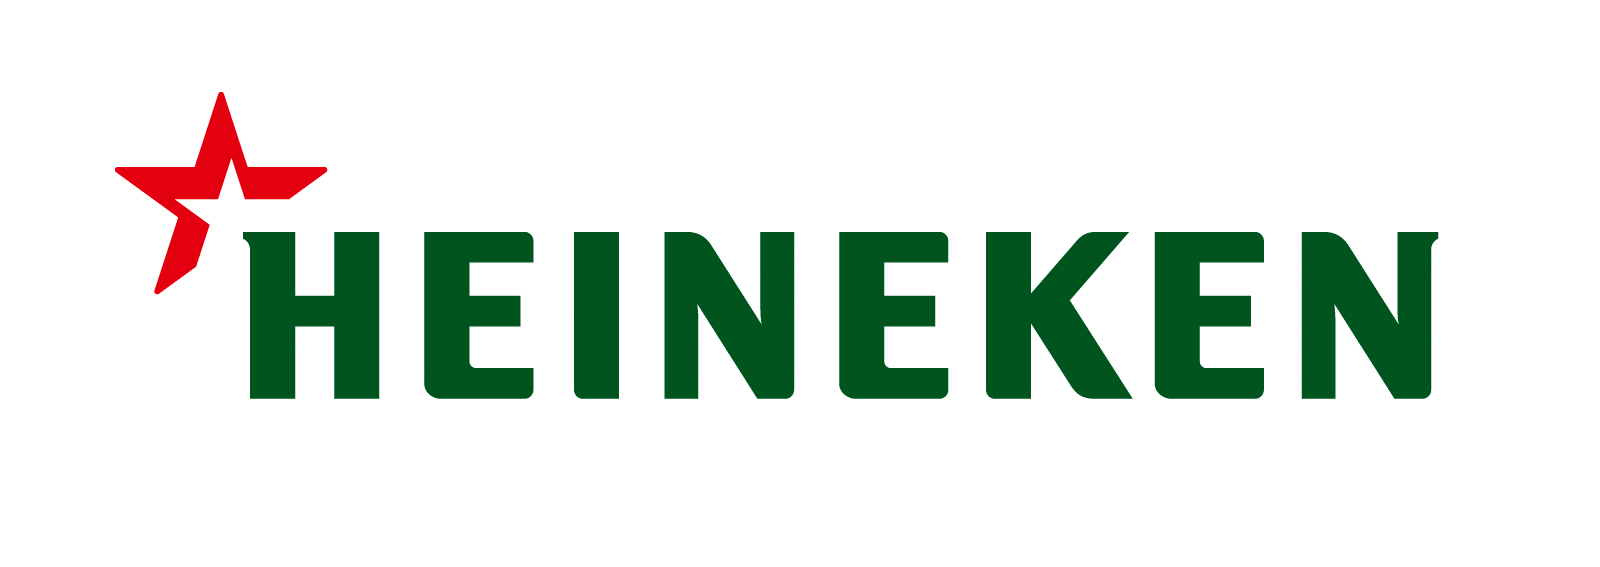 HEINEKEN-Logo-JPG